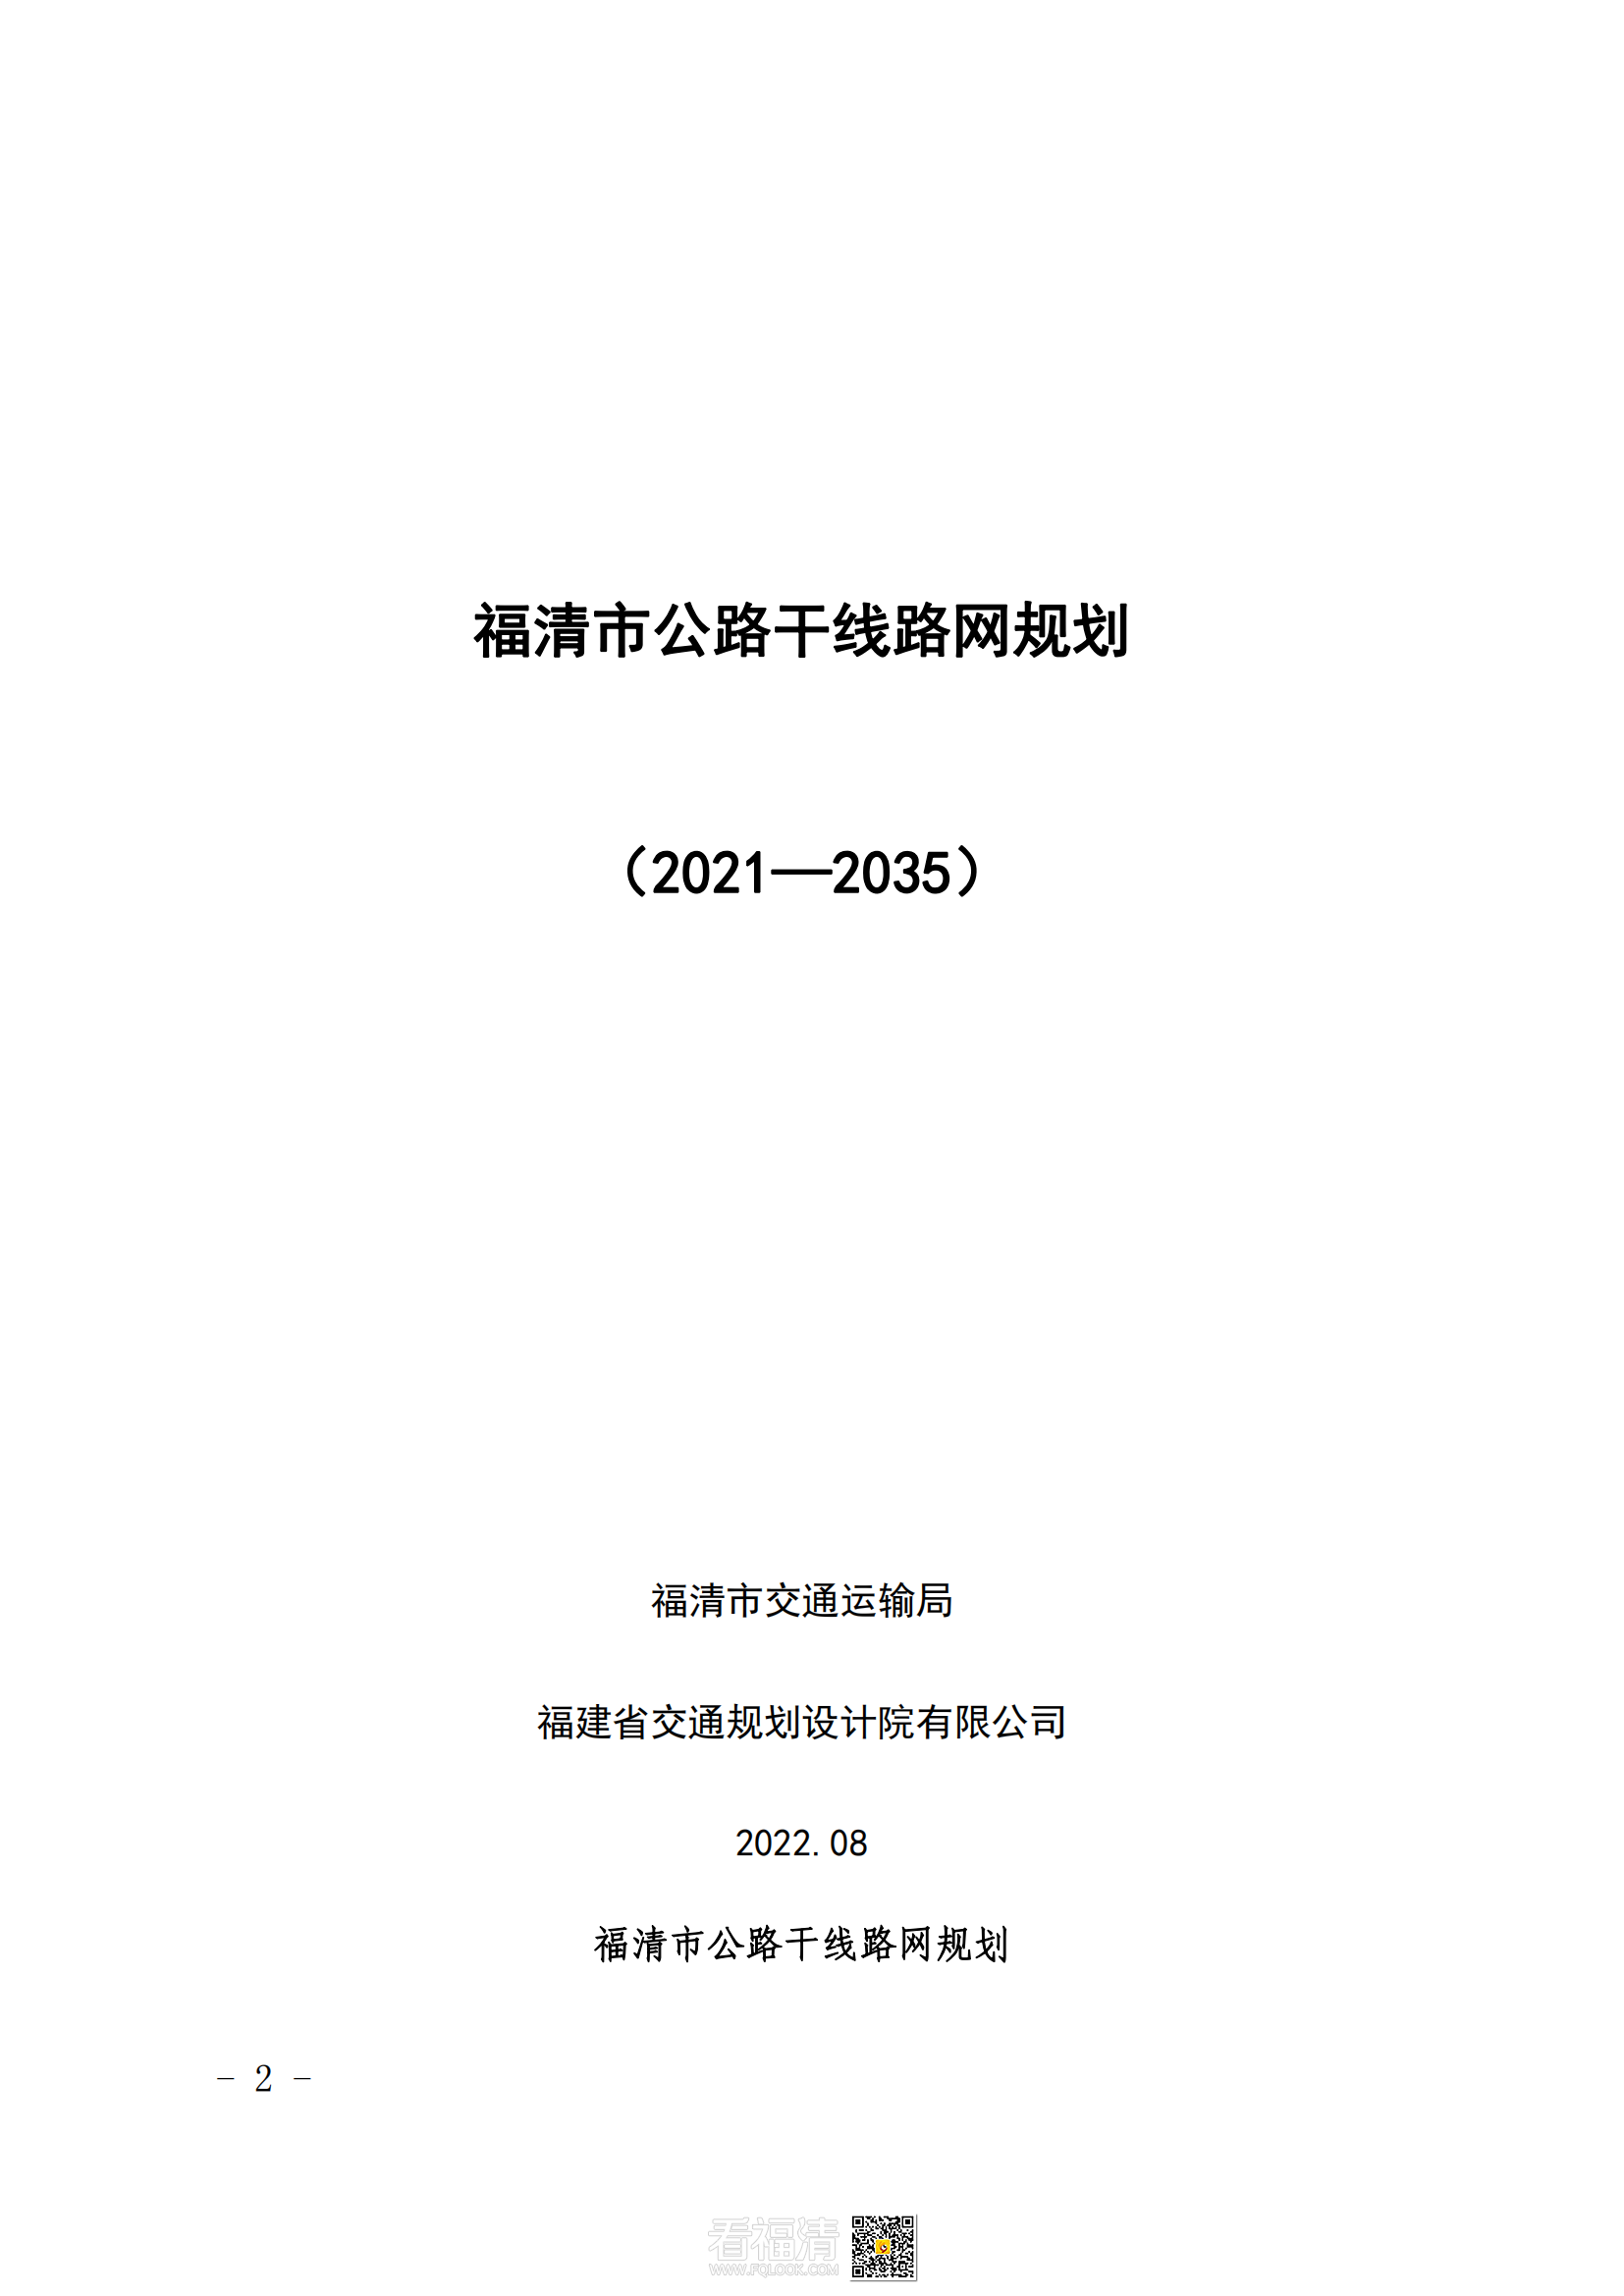 福清市公路干线路网规划（2021—2035）_00.png